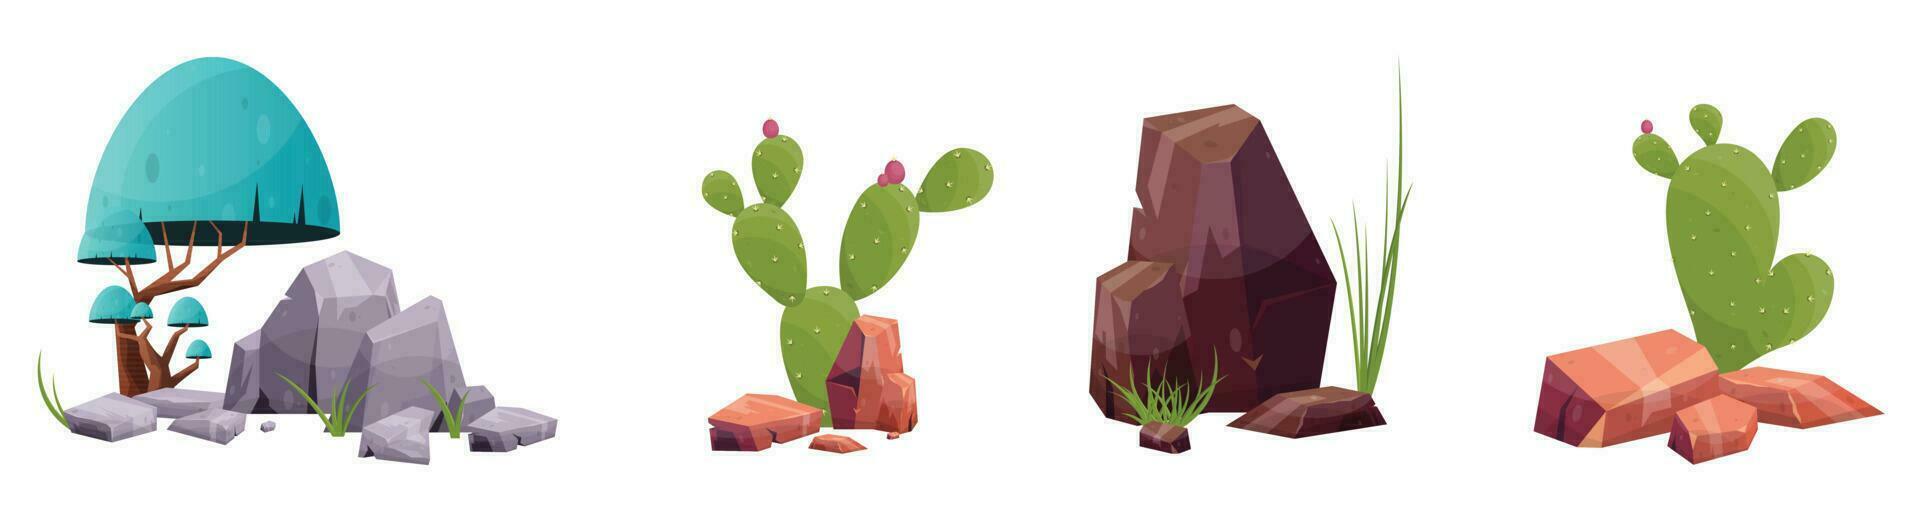 öken- sten med växter i annorlunda färger vektor illustration isolerat på vit